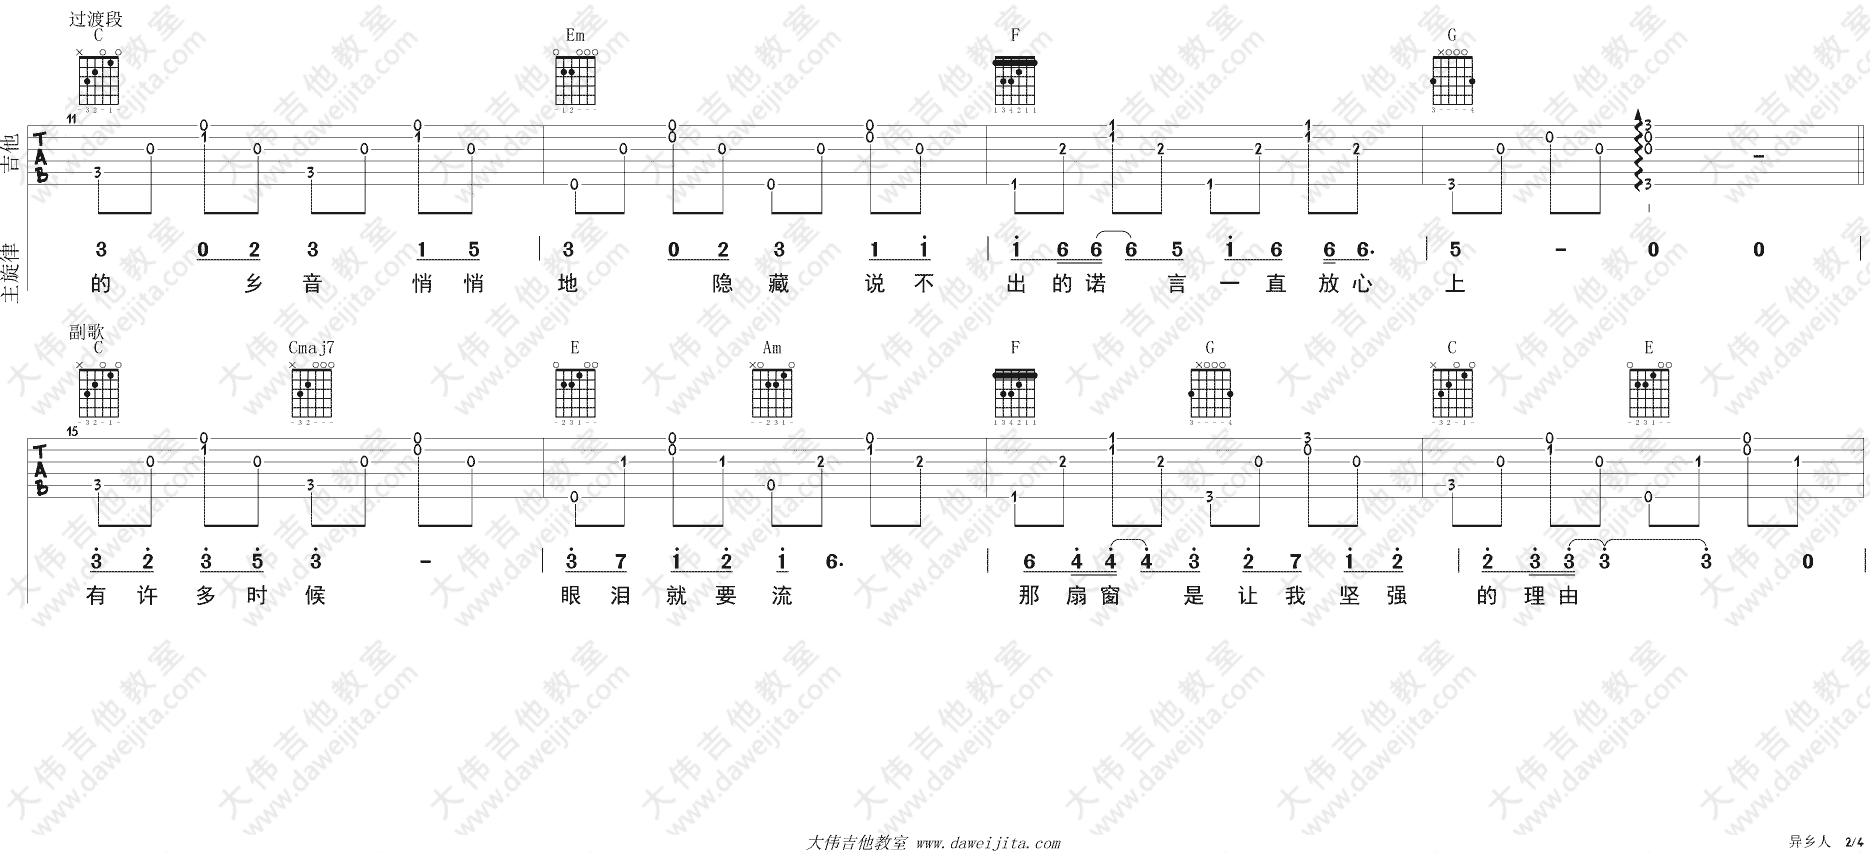 李健《异乡人》吉他谱(C调)-Guitar Music Score